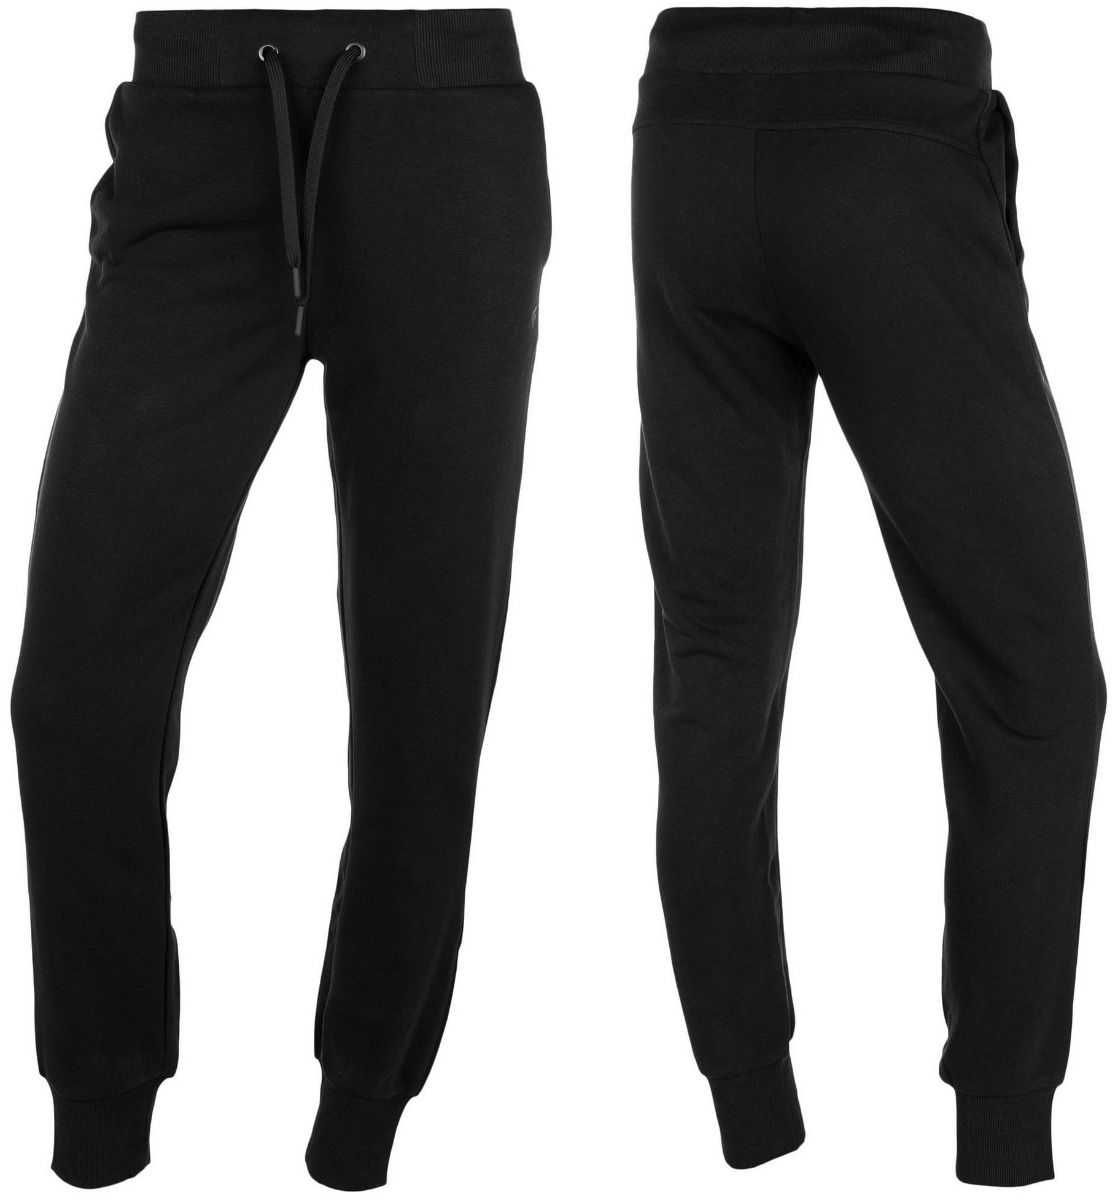 Spodnie damskie 4F czarne rozmiar XL,XXL